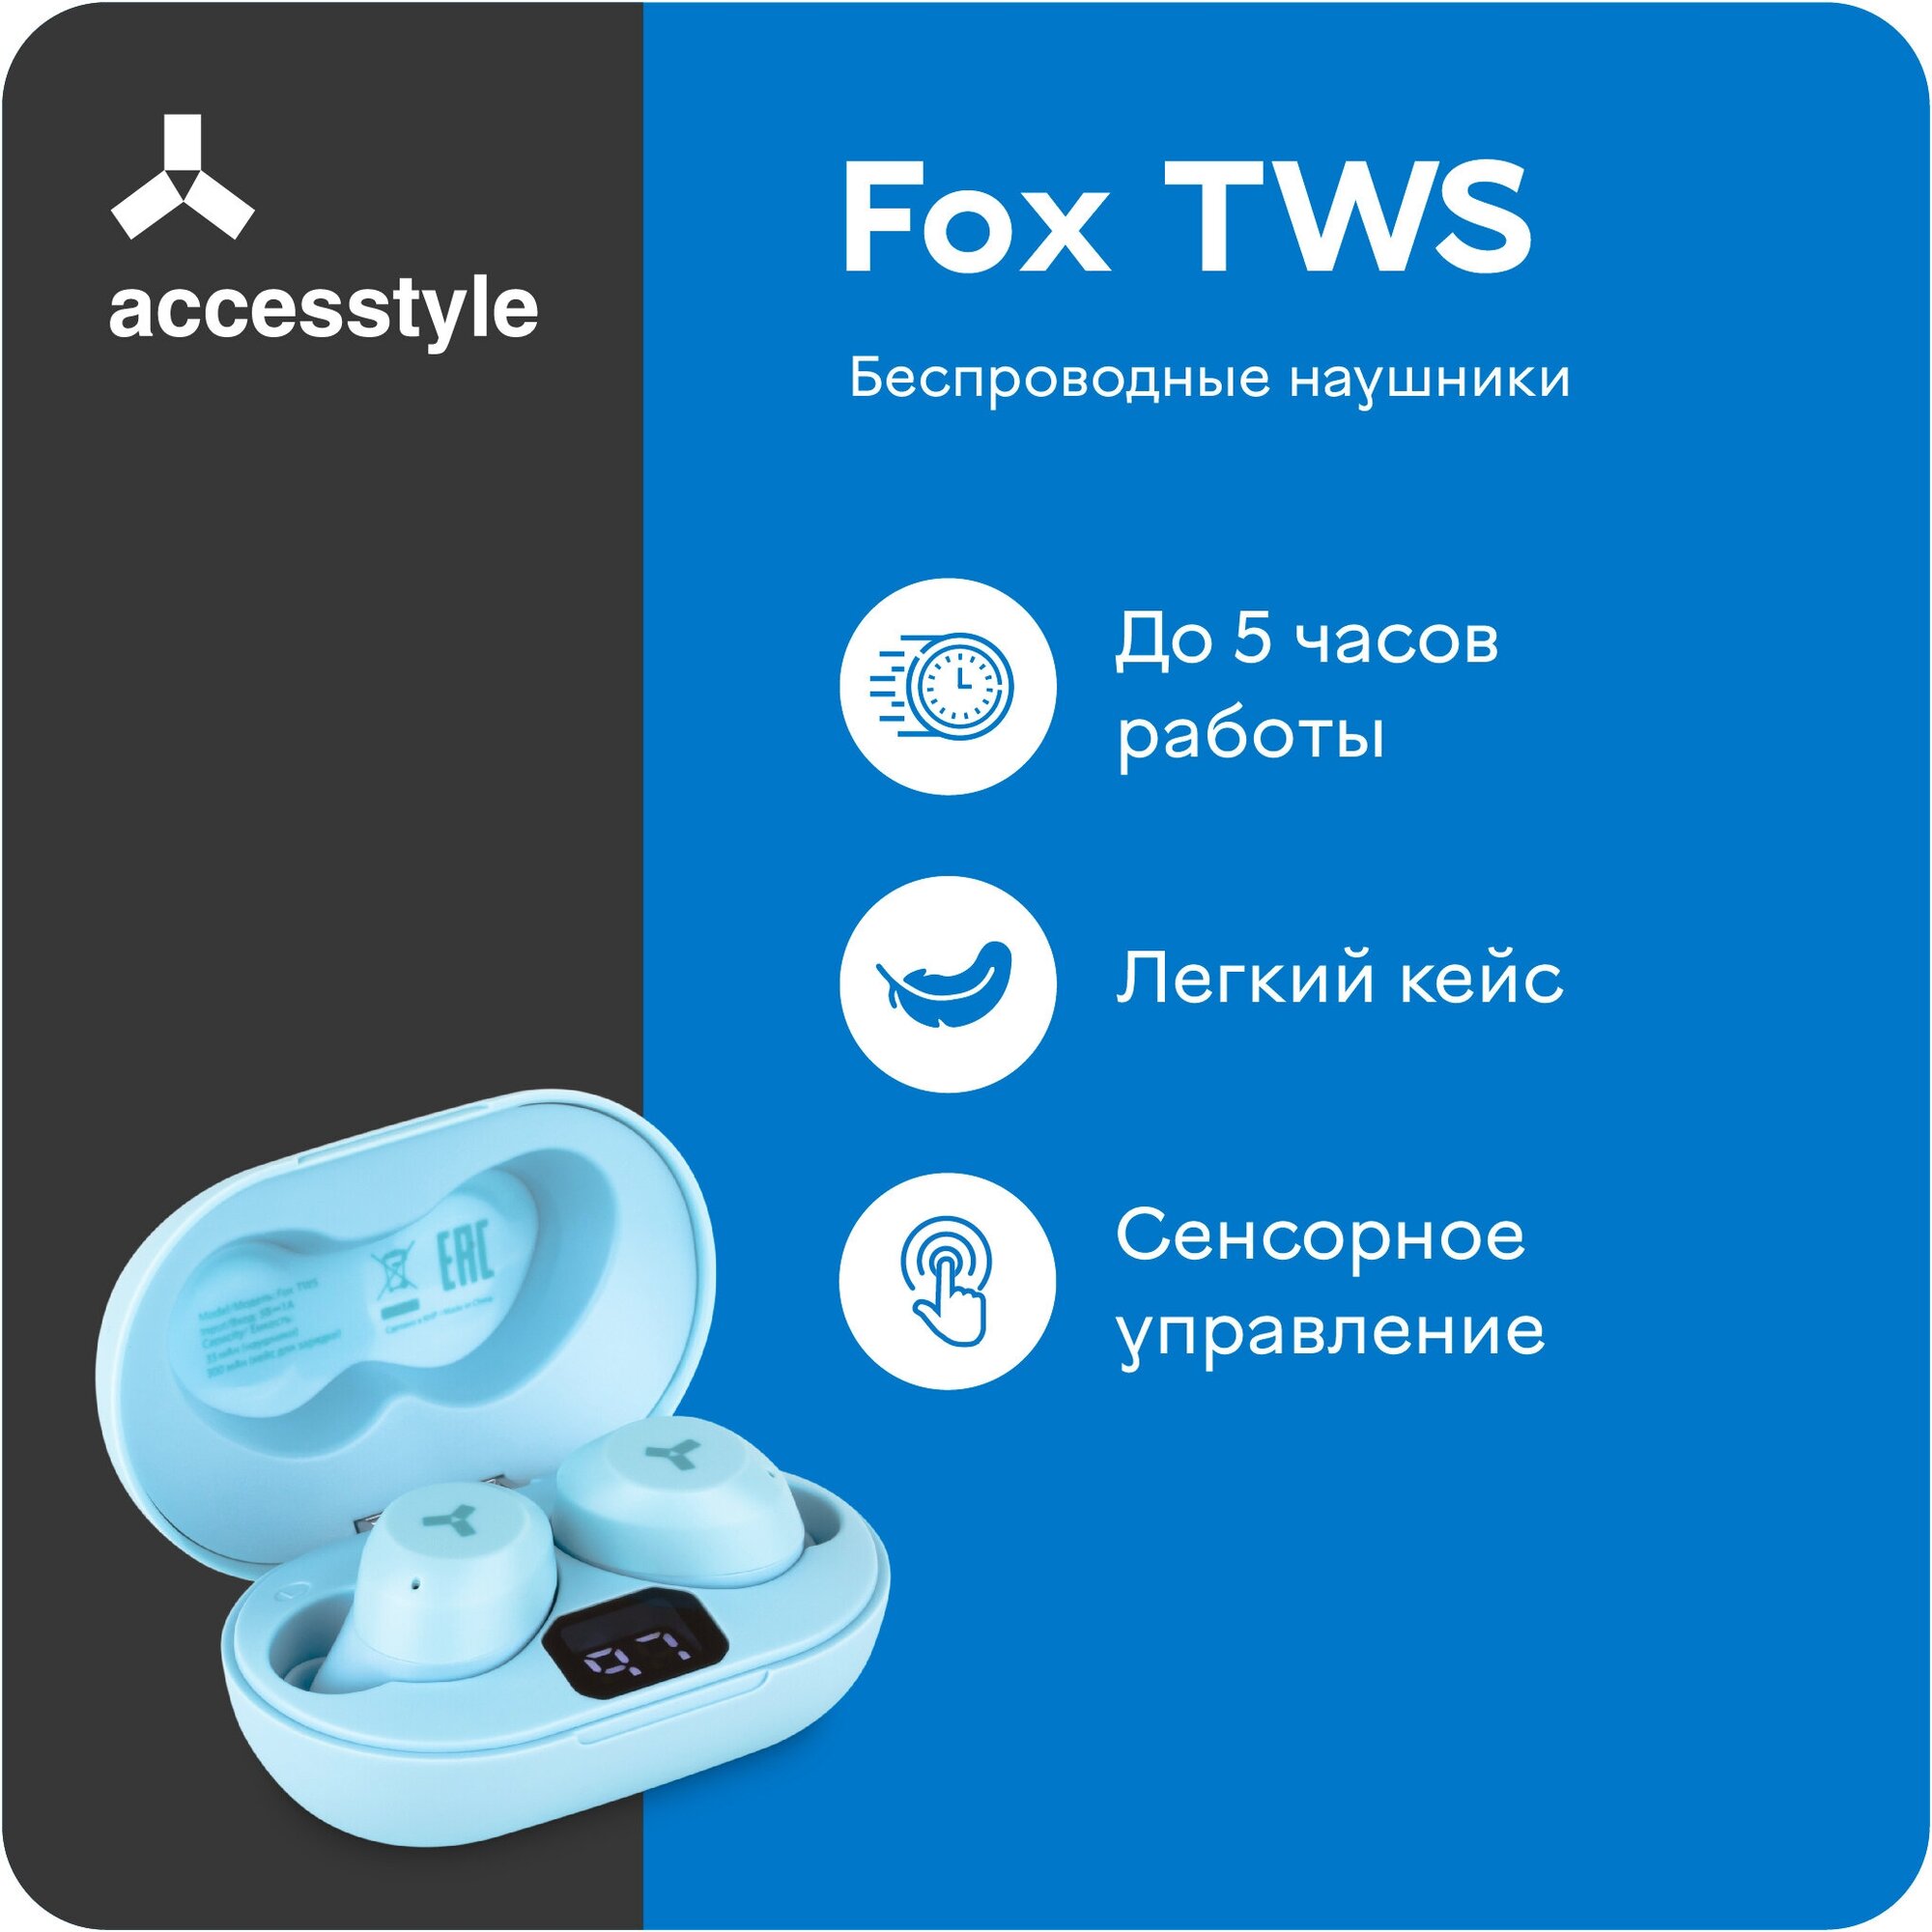 Беспроводные TWS-наушники Accesstyle Fox TWS, голубой